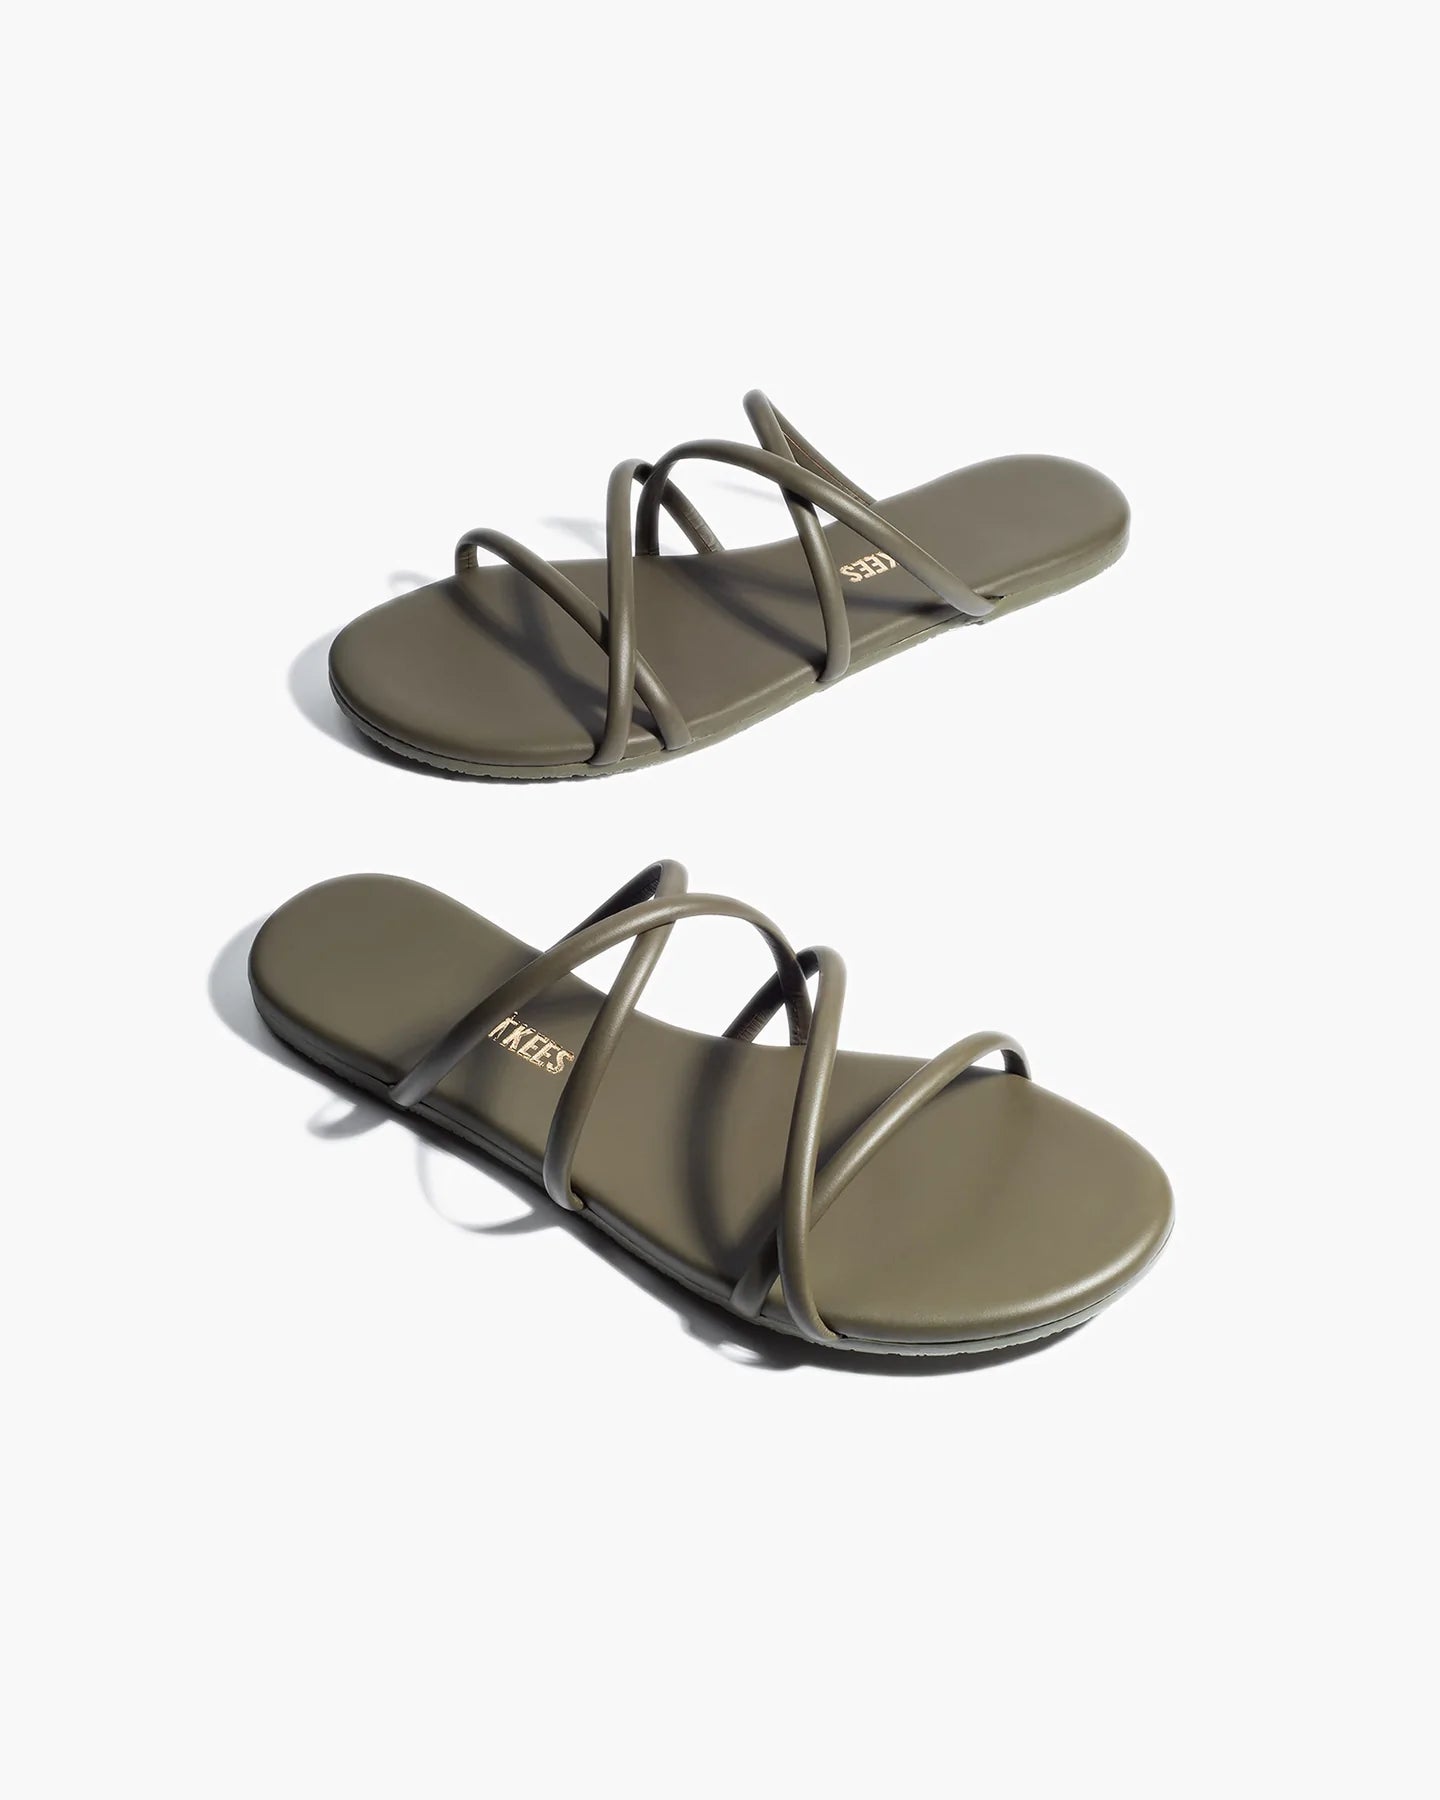 sloane-sandal-olive-4_1800x1800_jpg.webp